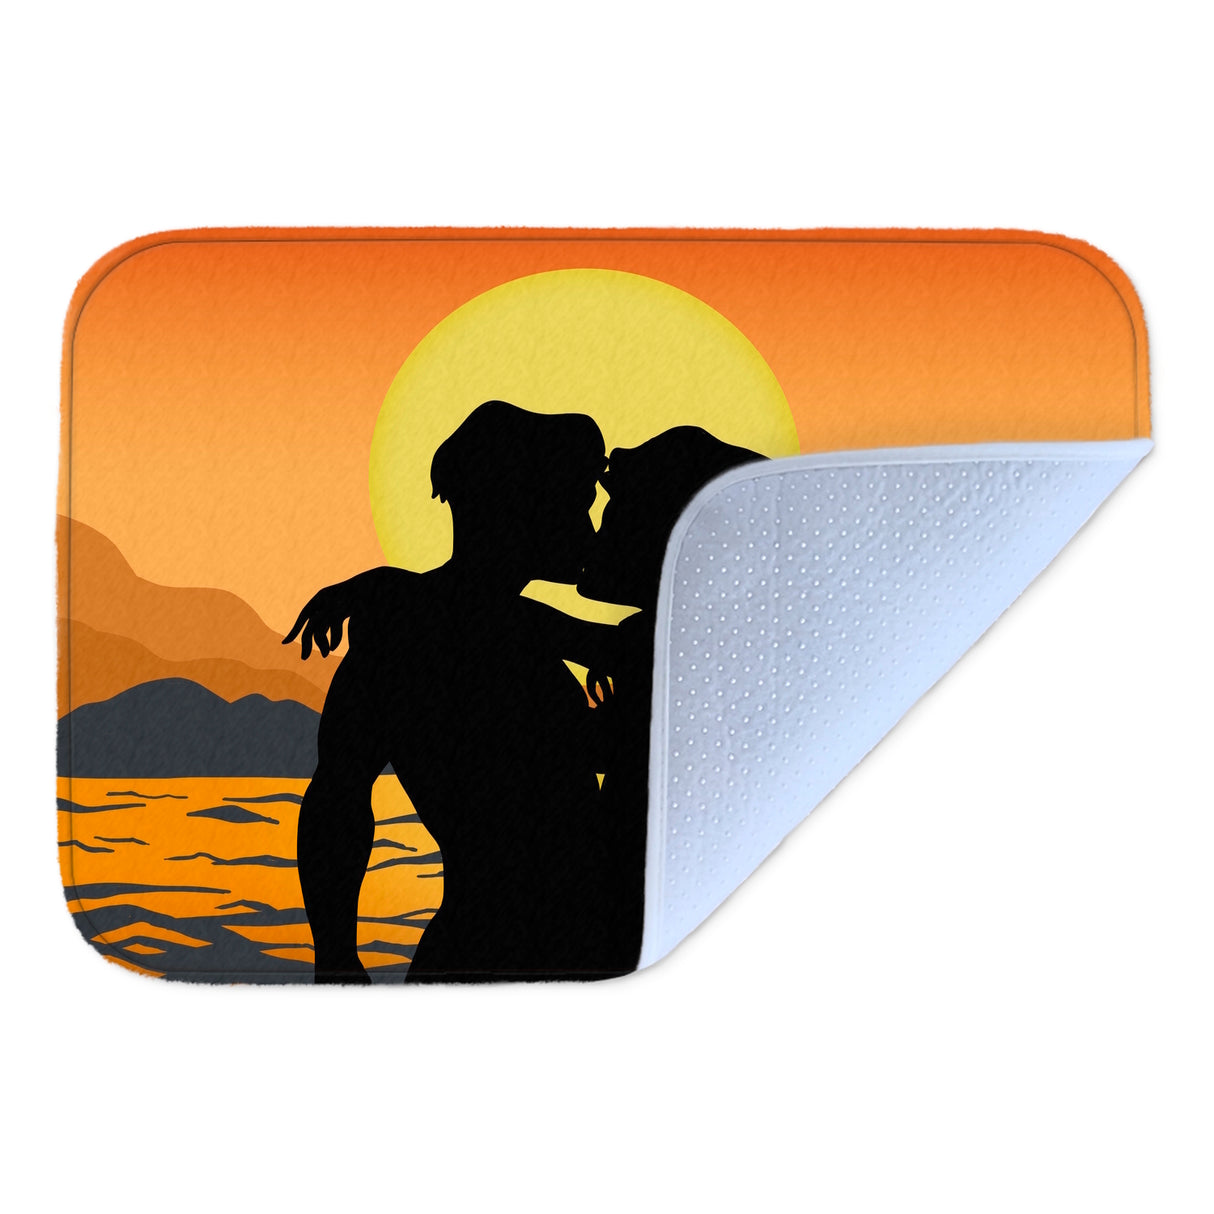 Verliebtes Paar vorm Sonnenuntergang Badematte